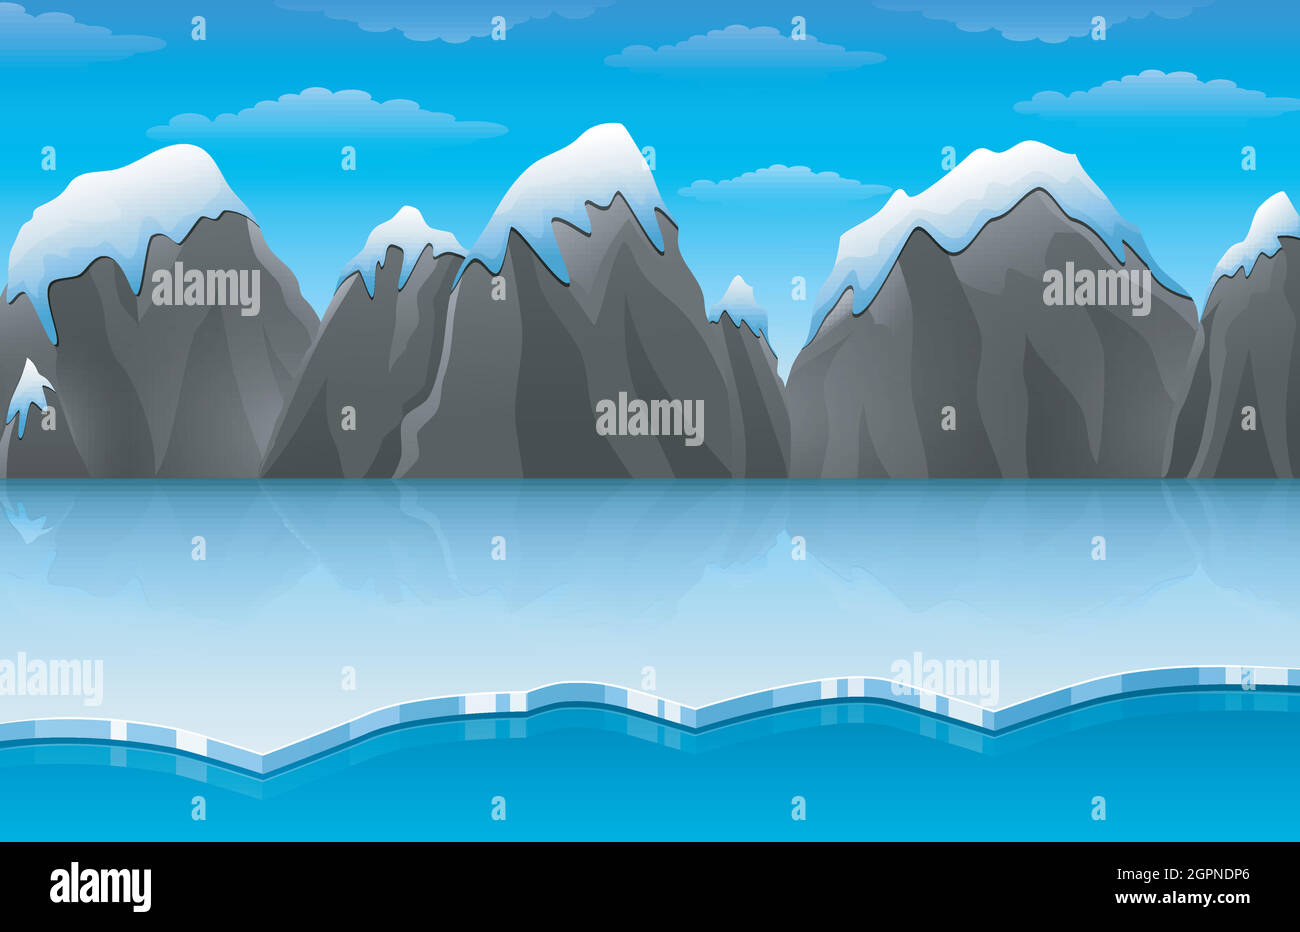 Dessin animé hiver paysage de glace arctique avec iceberg et montagnes enneigées rochers collines Illustration de Vecteur